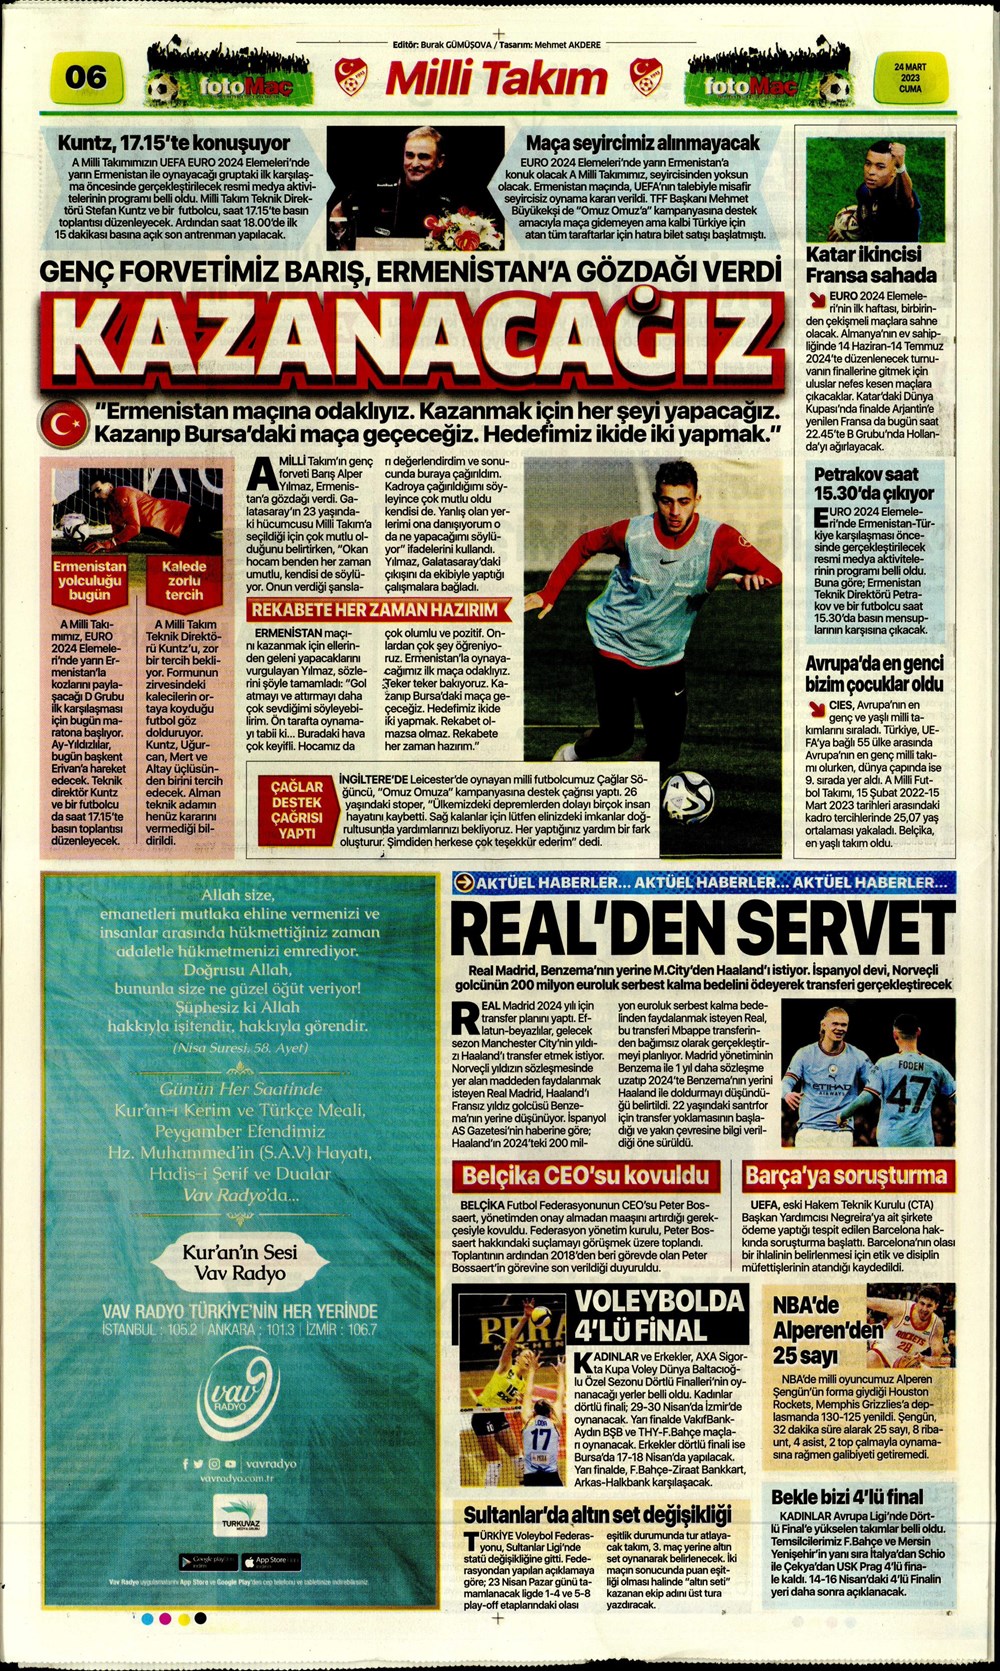 "Kuntz'dan son ayarlar" - Sporun manşetleri  - 14. Foto